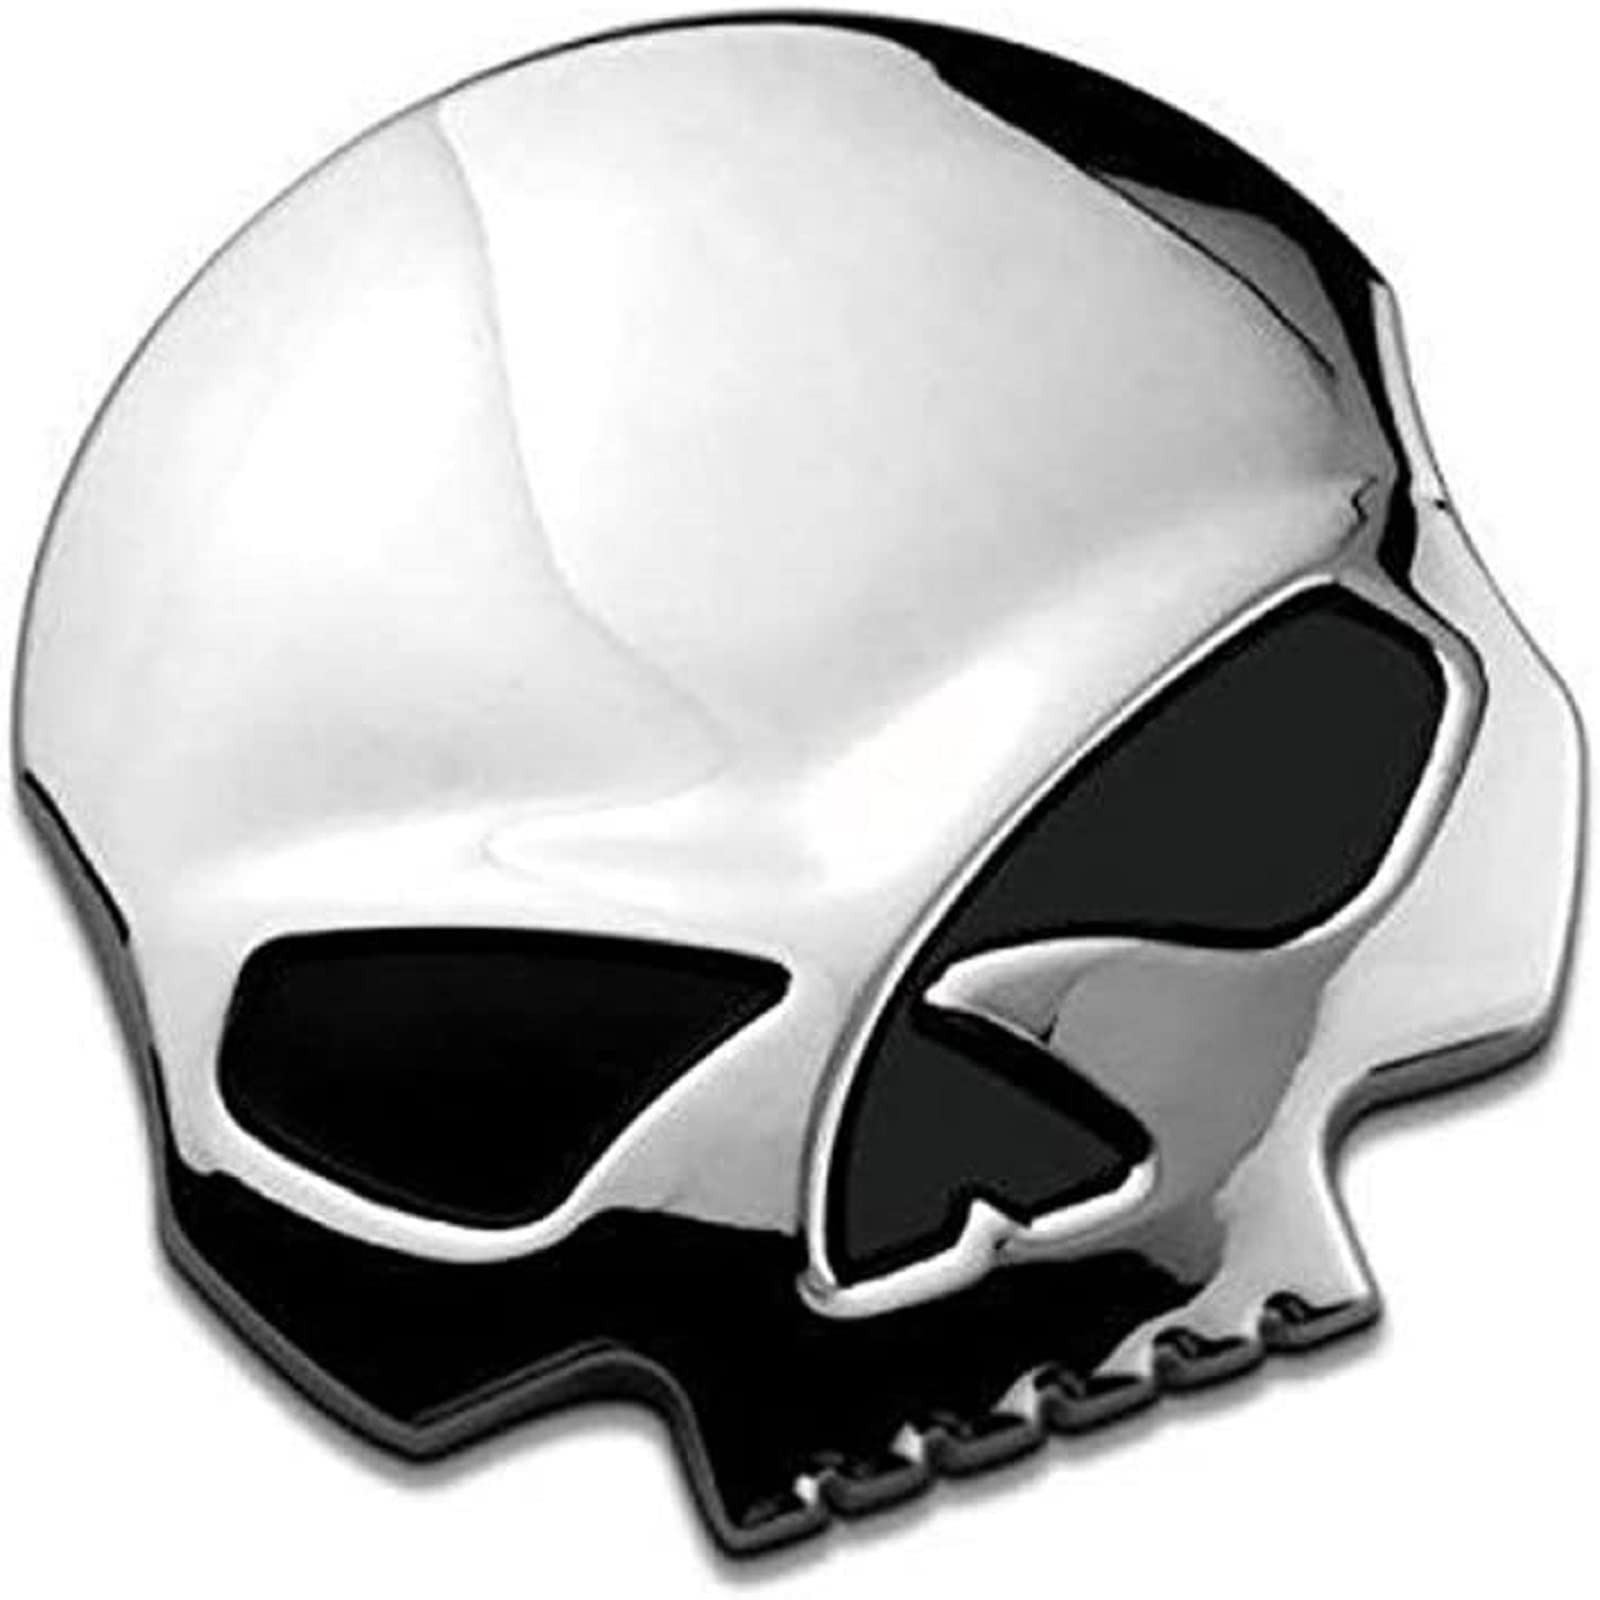 3D Skull Aufkleber Motorrad Aufkleber 7 * 6.8cm Schädel Emblem Aufkleber Auto Kofferraum Styling Zubehör Abziehbilder von EQLEF